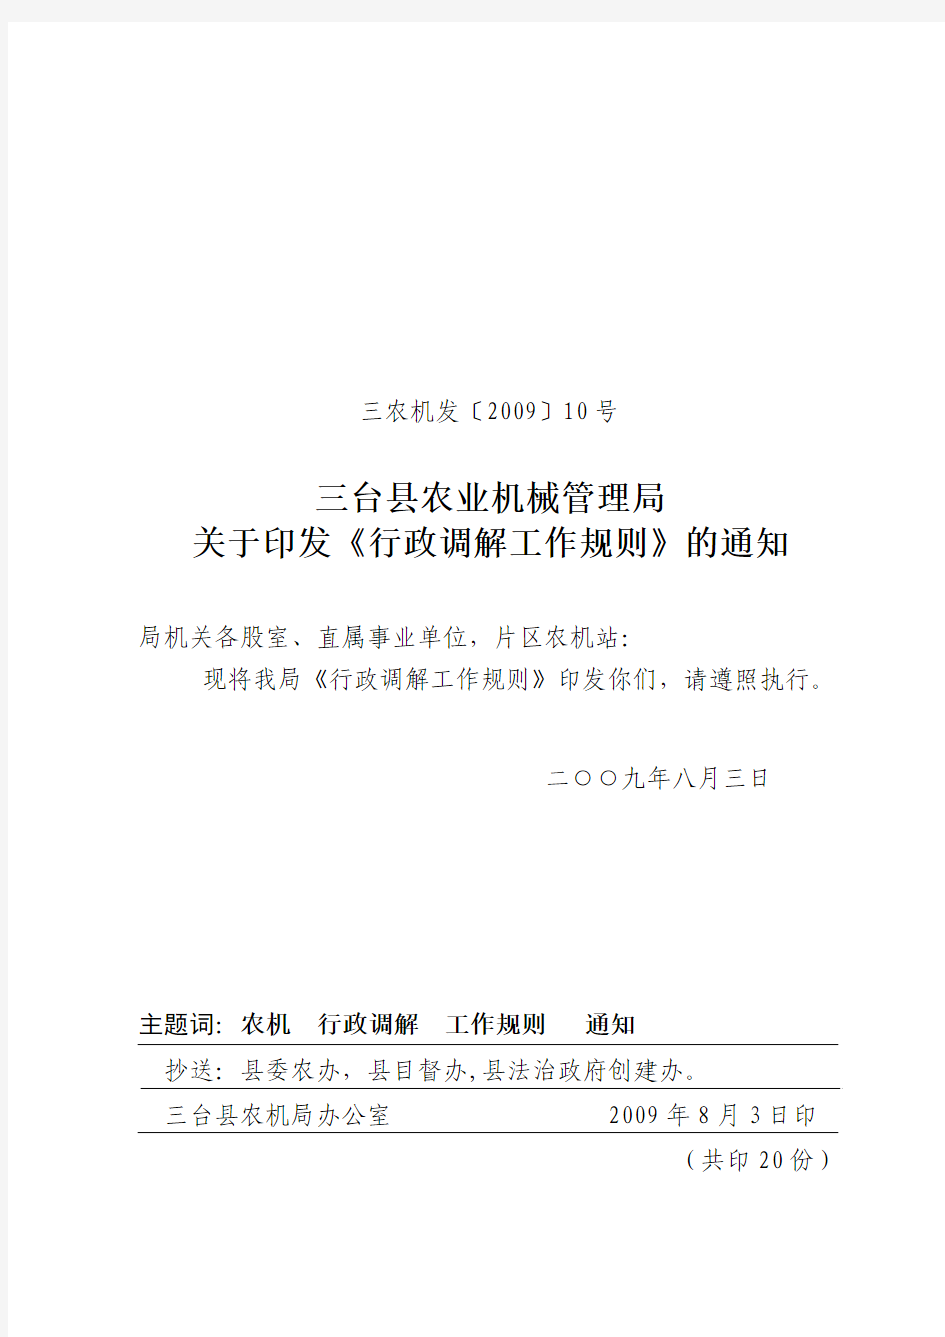 三台县农业机械管理局关于印发《行政调解工作规则》的通知